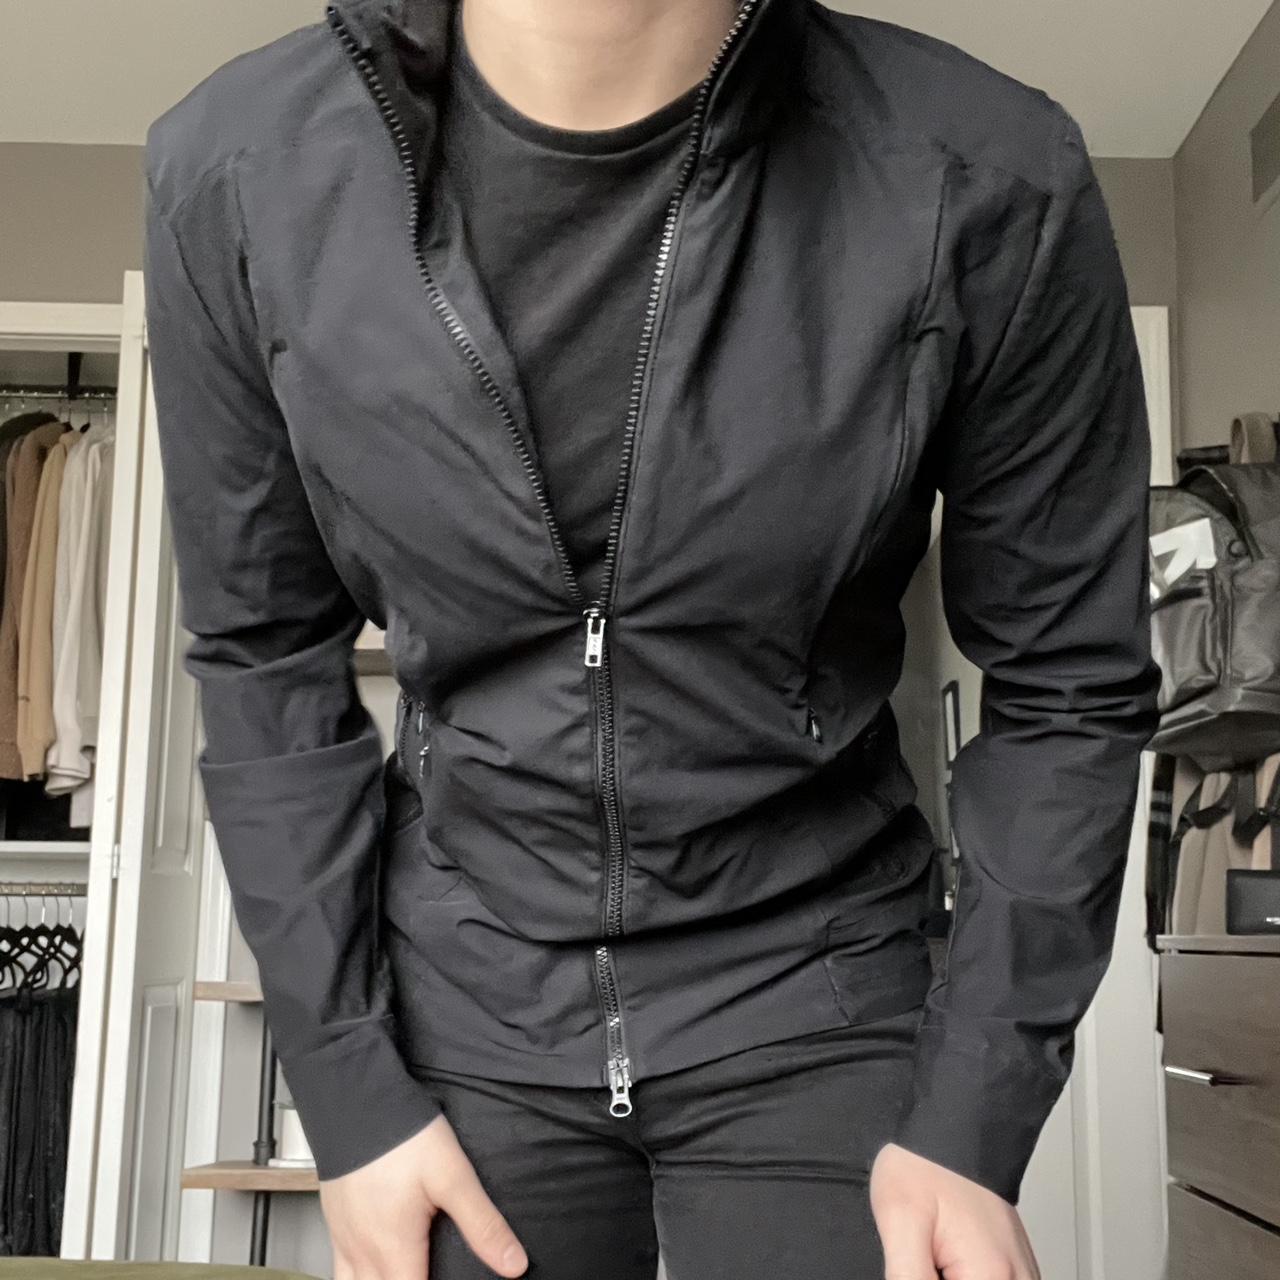 Lululemon Men's Black Jacket | Depop